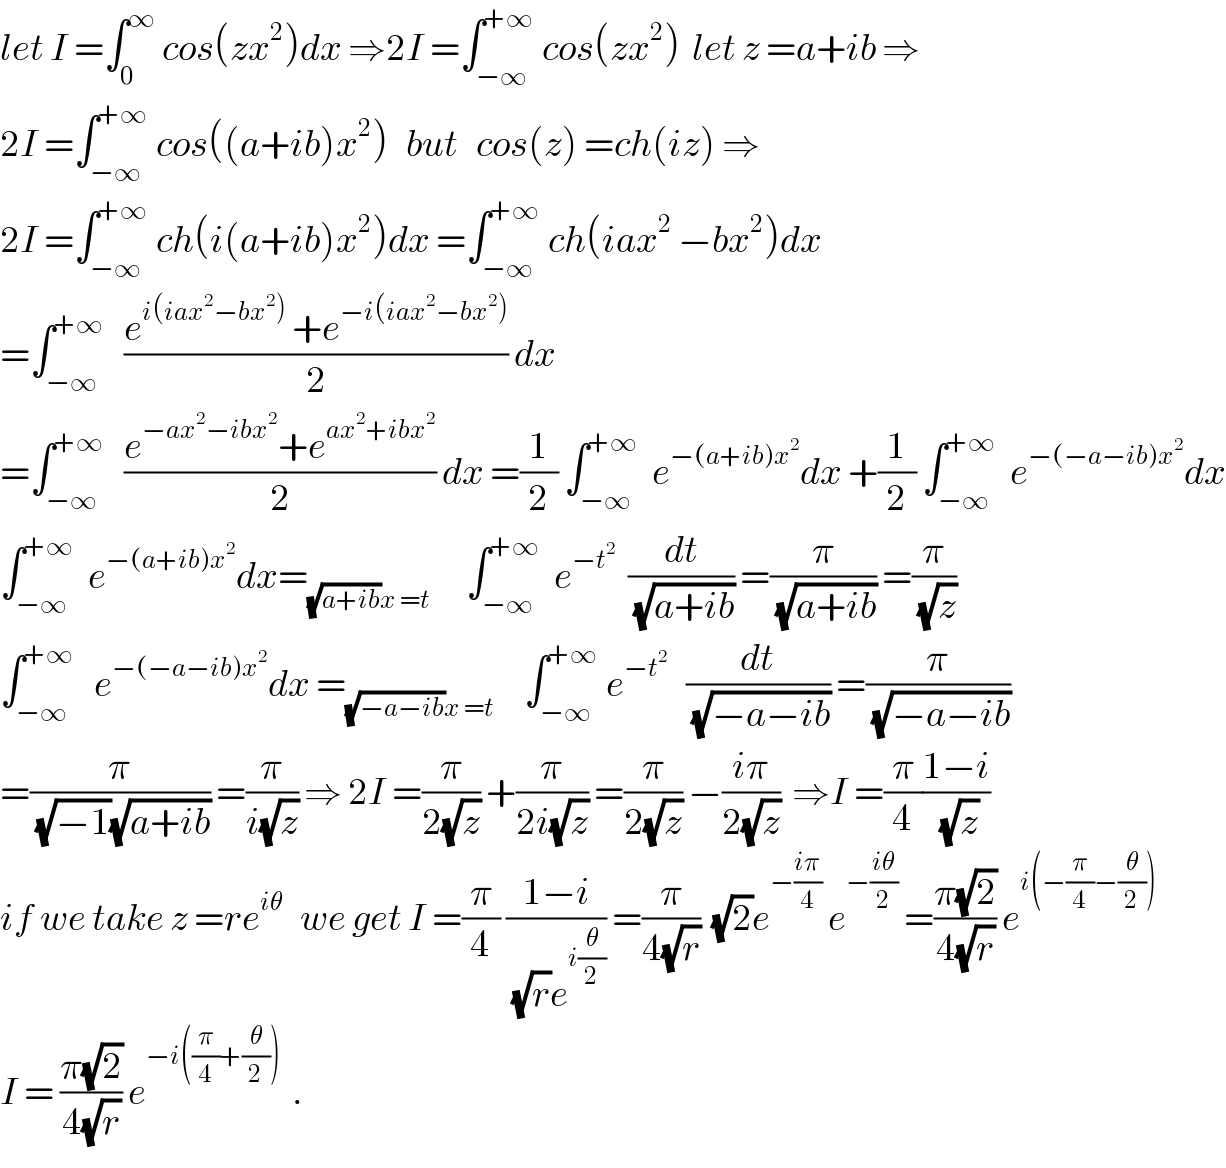 let I =∫_0 ^∞  cos(zx^2 )dx ⇒2I =∫_(−∞) ^(+∞)  cos(zx^2 )  let z =a+ib ⇒  2I =∫_(−∞) ^(+∞)  cos((a+ib)x^2 )   but   cos(z) =ch(iz) ⇒  2I =∫_(−∞) ^(+∞)  ch(i(a+ib)x^2 )dx =∫_(−∞) ^(+∞)  ch(iax^2  −bx^2 )dx  =∫_(−∞) ^(+∞)    ((e^(i(iax^2 −bx^2 ))  +e^(−i(iax^2 −bx^2 )) )/2) dx  =∫_(−∞) ^(+∞)    ((e^(−ax^2 −ibx^2 ) +e^(ax^2 +ibx^2 ) )/2) dx =(1/2) ∫_(−∞) ^(+∞)   e^(−(a+ib)x^2 ) dx +(1/2) ∫_(−∞) ^(+∞)   e^(−(−a−ib)x^2 ) dx  ∫_(−∞) ^(+∞)   e^(−(a+ib)x^2 ) dx=_((√(a+ib))x =t)       ∫_(−∞) ^(+∞)   e^(−t^2 )   (dt/(√(a+ib))) =(π/(√(a+ib))) =(π/(√z))  ∫_(−∞) ^(+∞)    e^(−(−a−ib)x^2 ) dx =_((√(−a−ib))x =t)      ∫_(−∞) ^(+∞)  e^(−t^2 )    (dt/(√(−a−ib))) =(π/(√(−a−ib)))  =(π/((√(−1))(√(a+ib)))) =(π/(i(√z))) ⇒ 2I =(π/(2(√z))) +(π/(2i(√z))) =(π/(2(√z))) −((iπ)/(2(√z)))  ⇒I =(π/4)((1−i)/(√z))  if we take z =re^(iθ)    we get I =(π/4) ((1−i)/((√r)e^(i(θ/2)) )) =(π/(4(√r)))  (√2)e^(−((iπ)/4))  e^(−((iθ)/2))  =((π(√2))/(4(√r))) e^(i(−(π/4)−(θ/2)))   I = ((π(√2))/(4(√r))) e^(−i((π/4)+(θ/2)))   .  